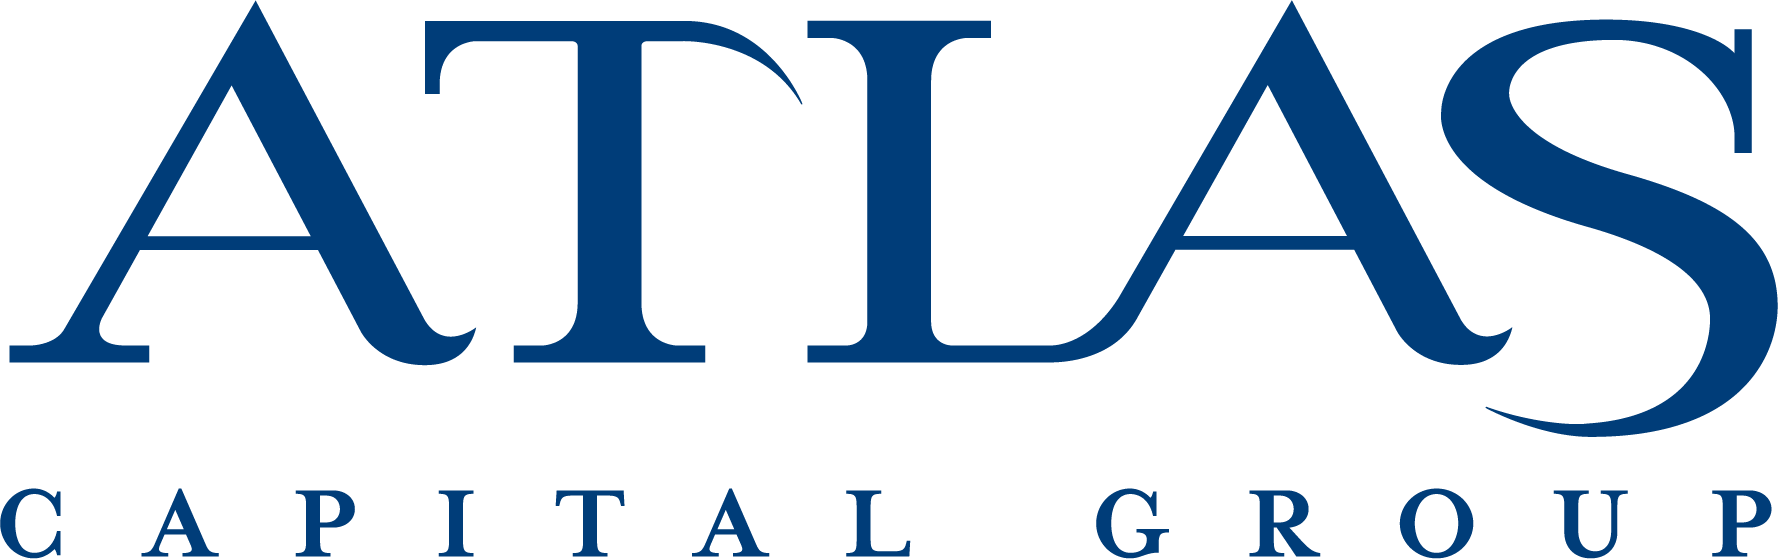 Atlas logo.png